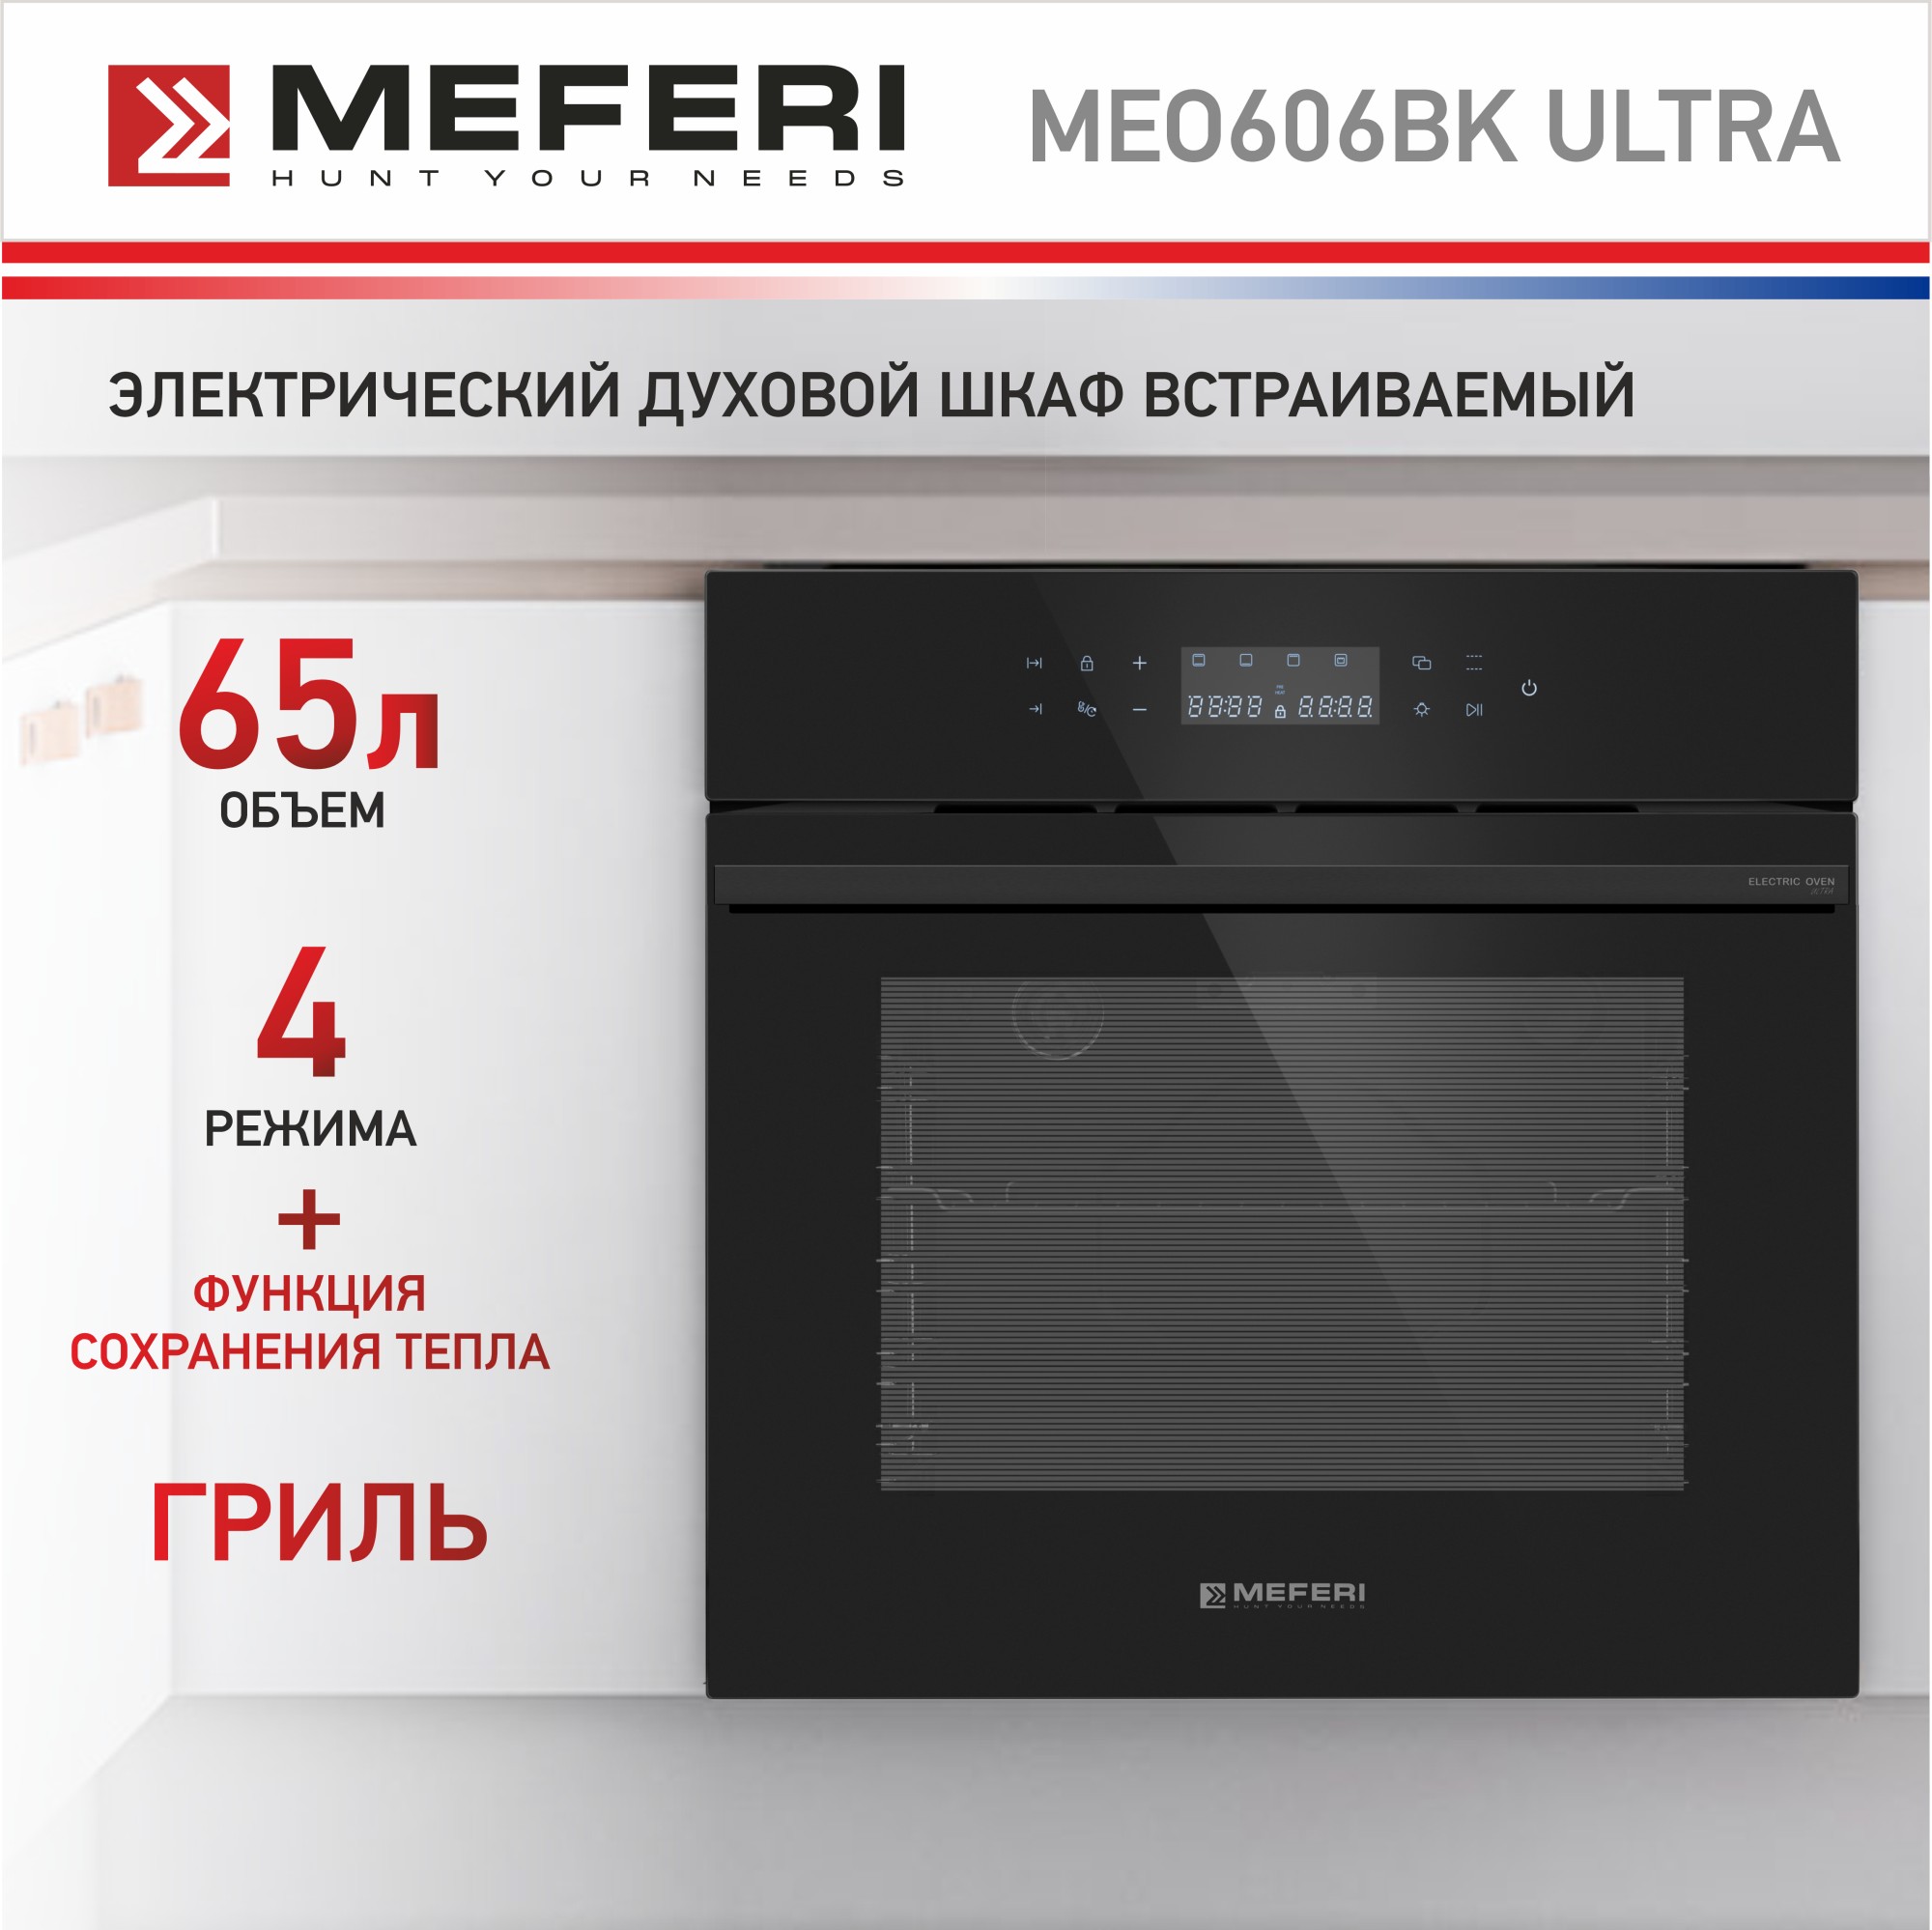 Электрический духовой шкаф MEFERI MEO606BK ULTRA смарт часы хороший выбор h12 ultra серебристый 2344564442